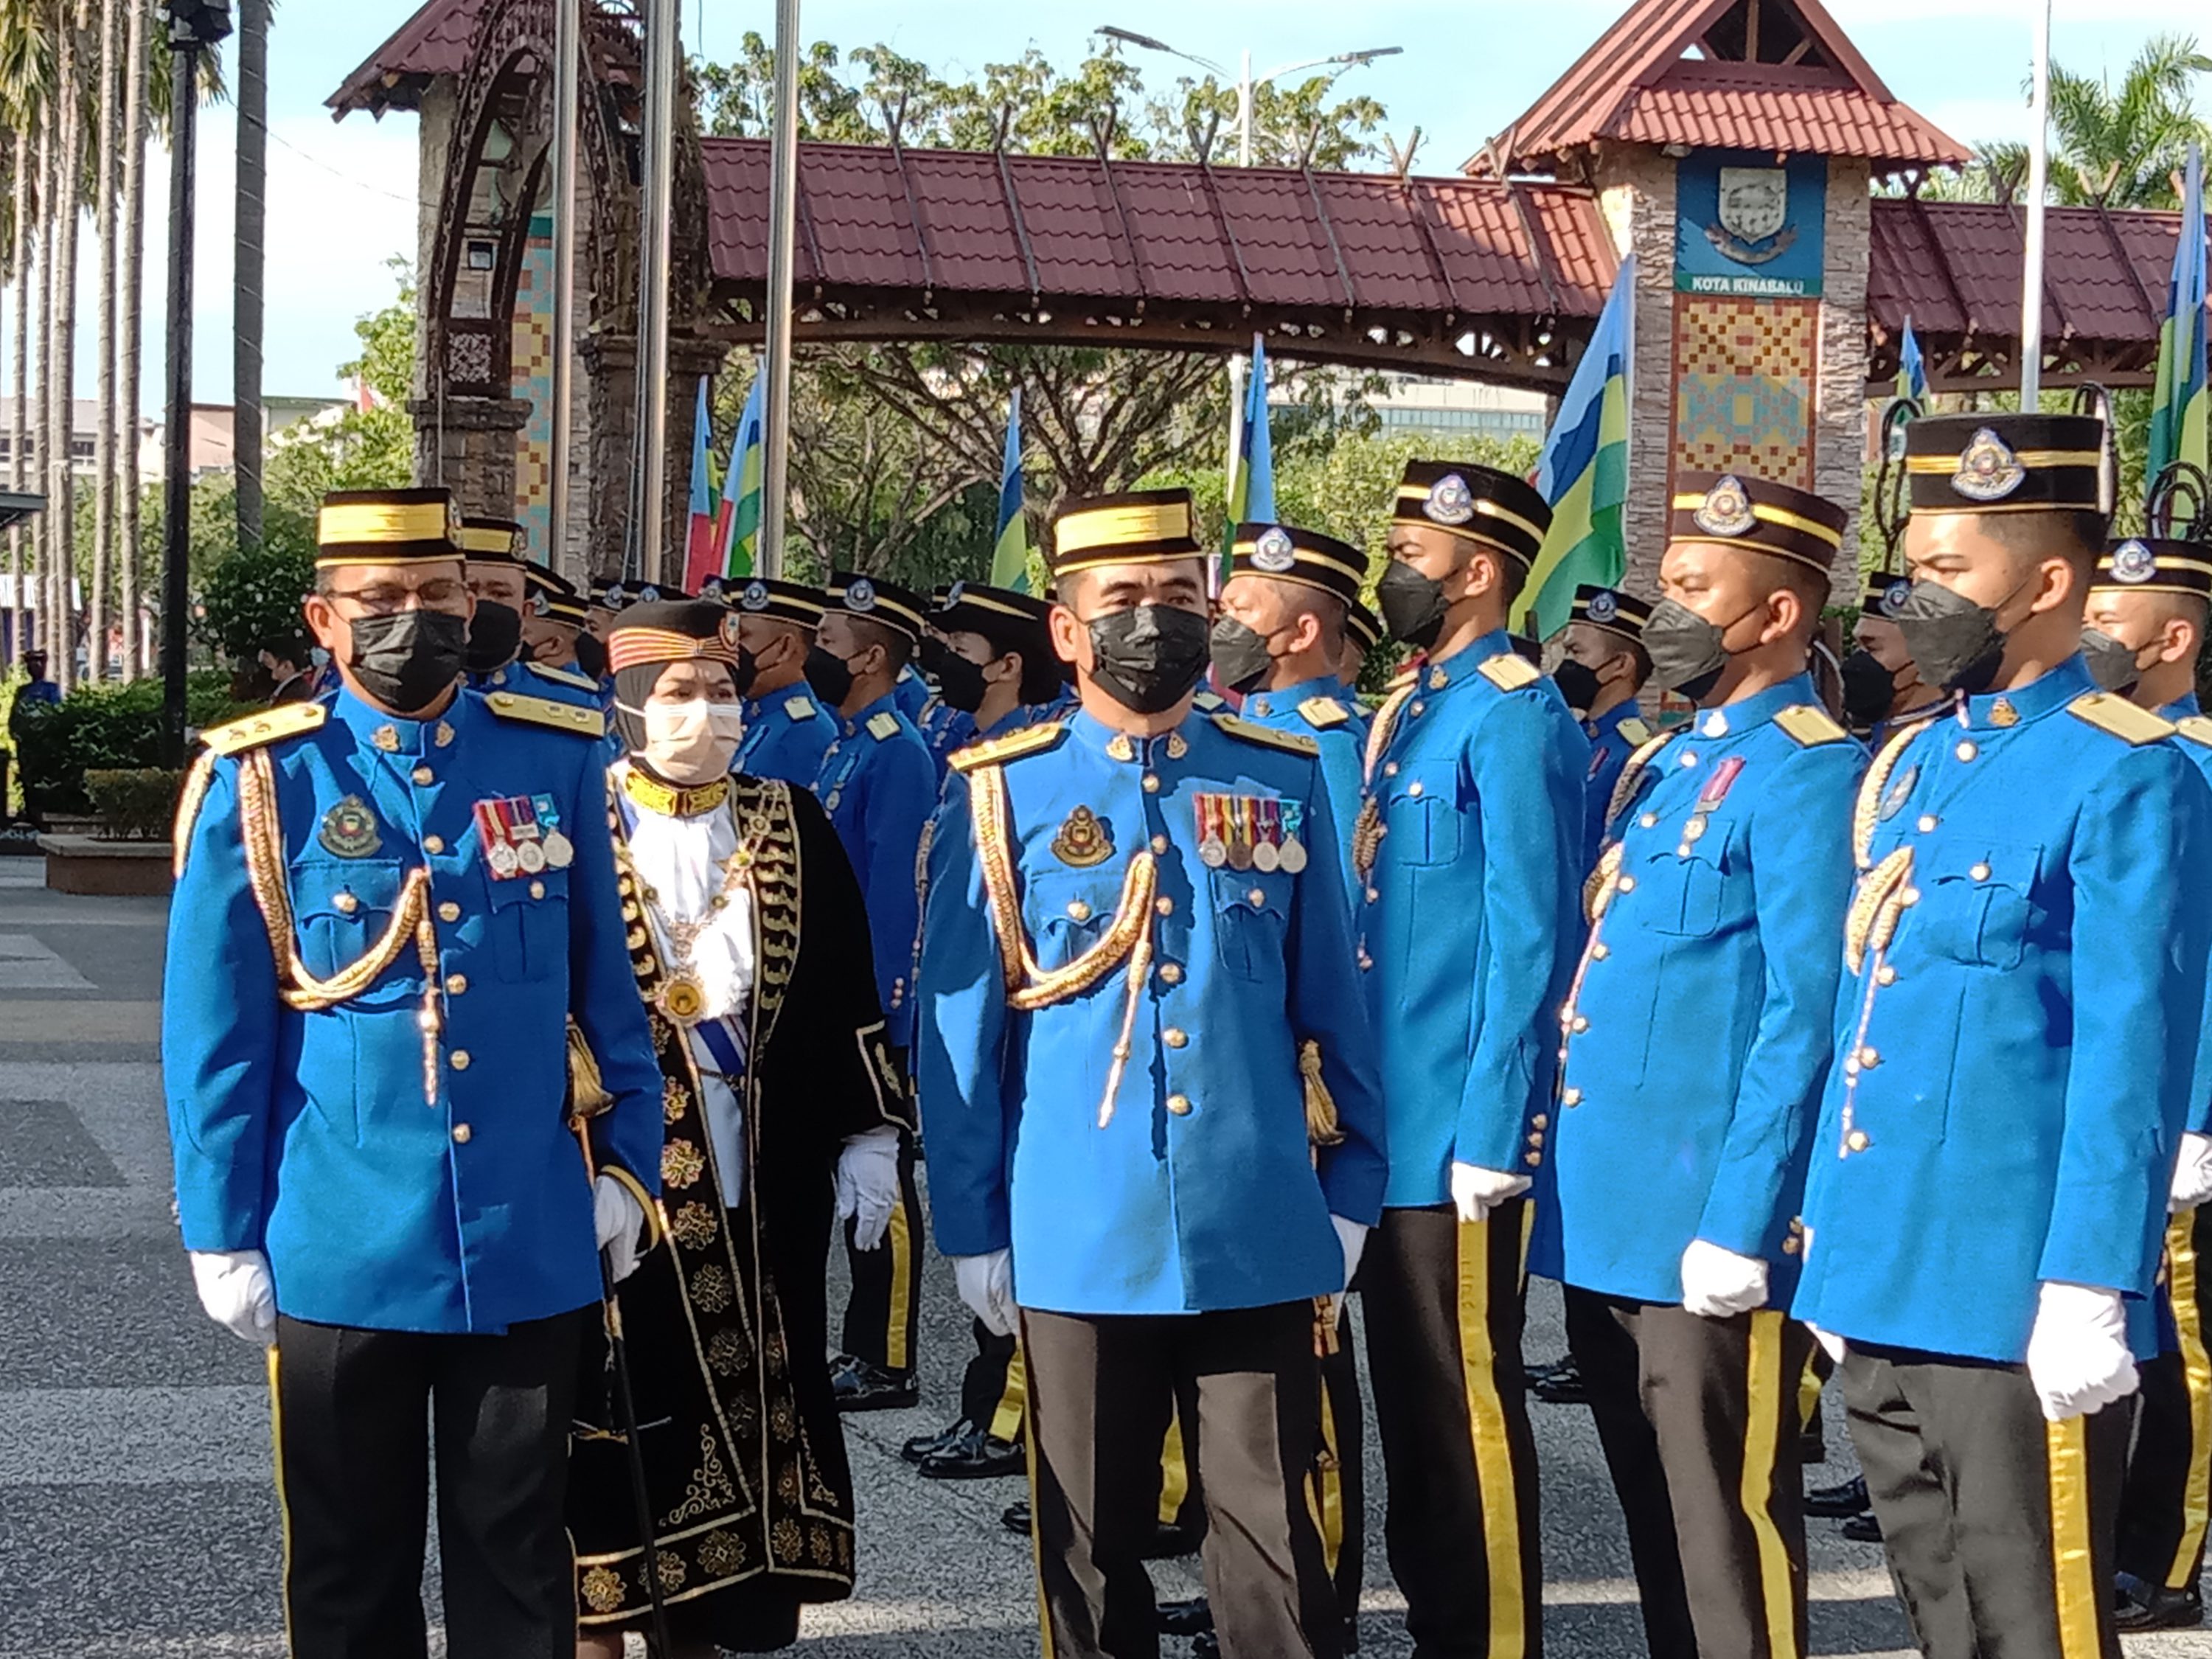 Mayor Bandaraya Kota Kinabalu Datuk Noorliza Awang Alip memeriksa Pasukan Kawalan Kehormat DBKK sempena Ulang Tahun Ke-22 Bandaraya Kota Kinabalu di perkarangan bangunan DBKK, pada Rabu.